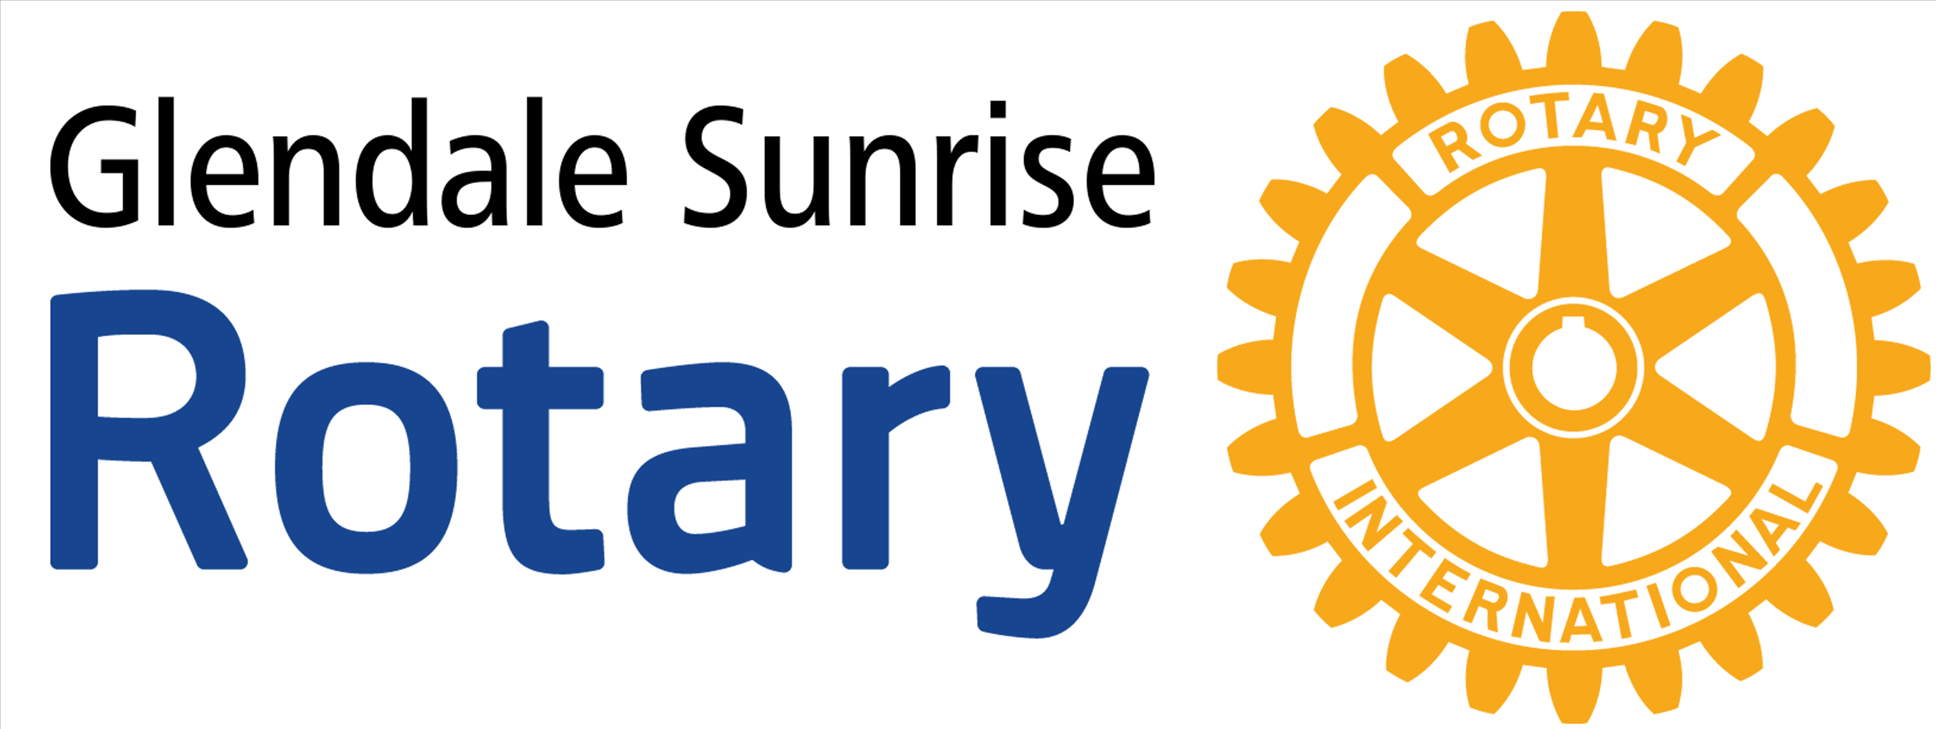 Glendale Sunrise Rotary logo